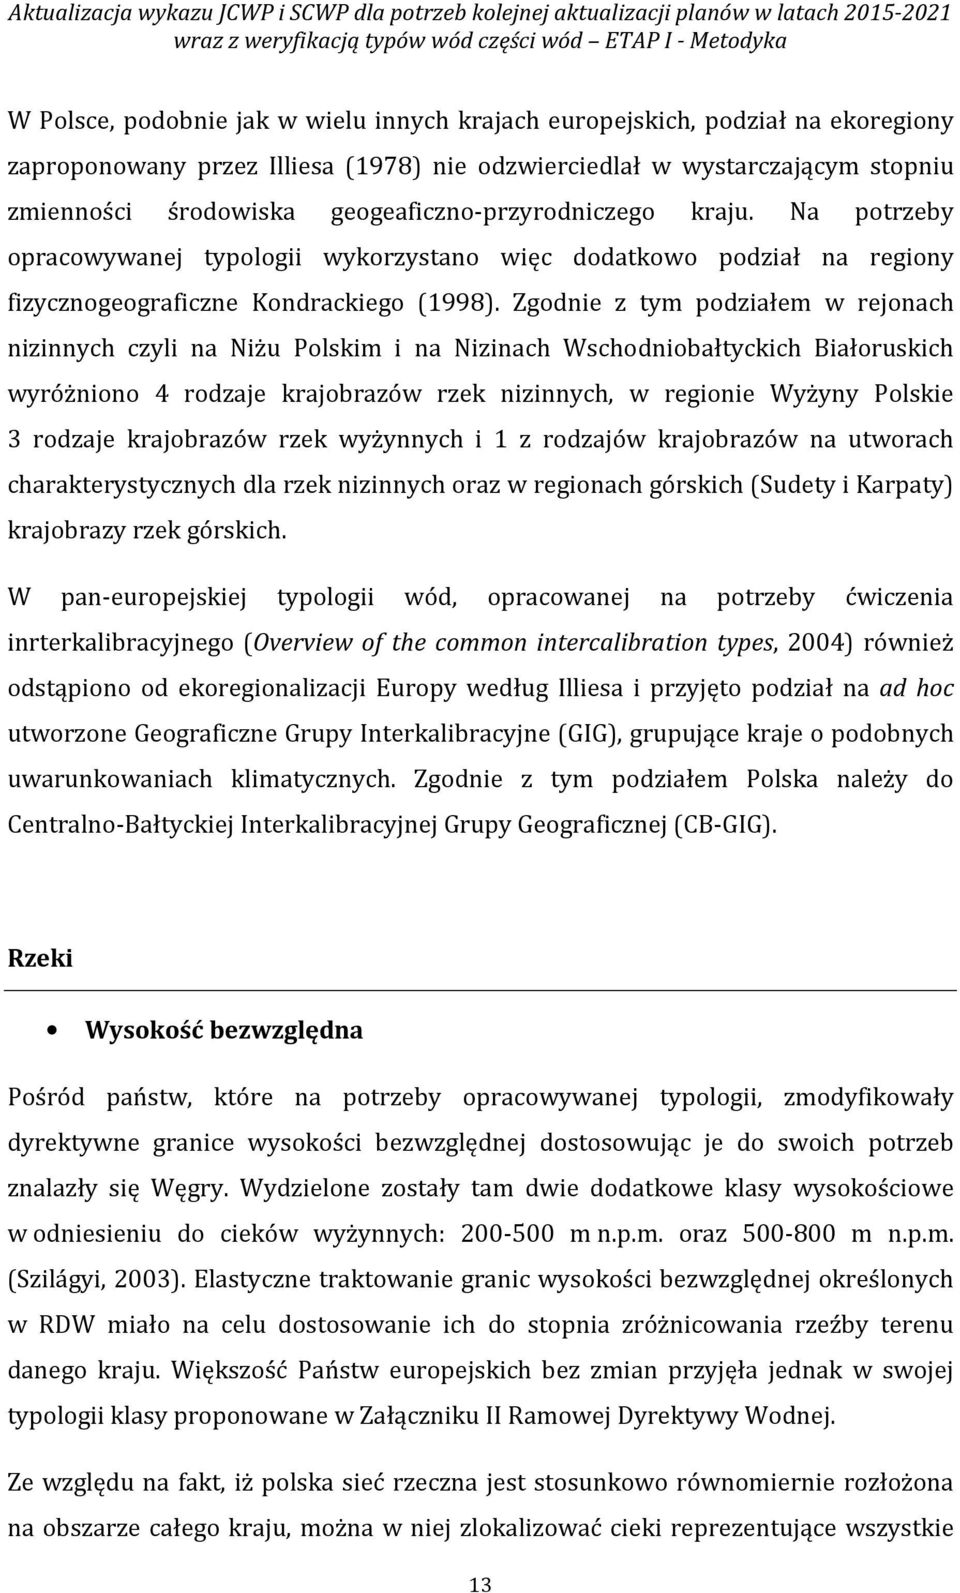 Na potrzeby opracowywanej typologii wykorzystano więc dodatkowo podział na regiony fizycznogeograficzne Kondrackiego (1998).